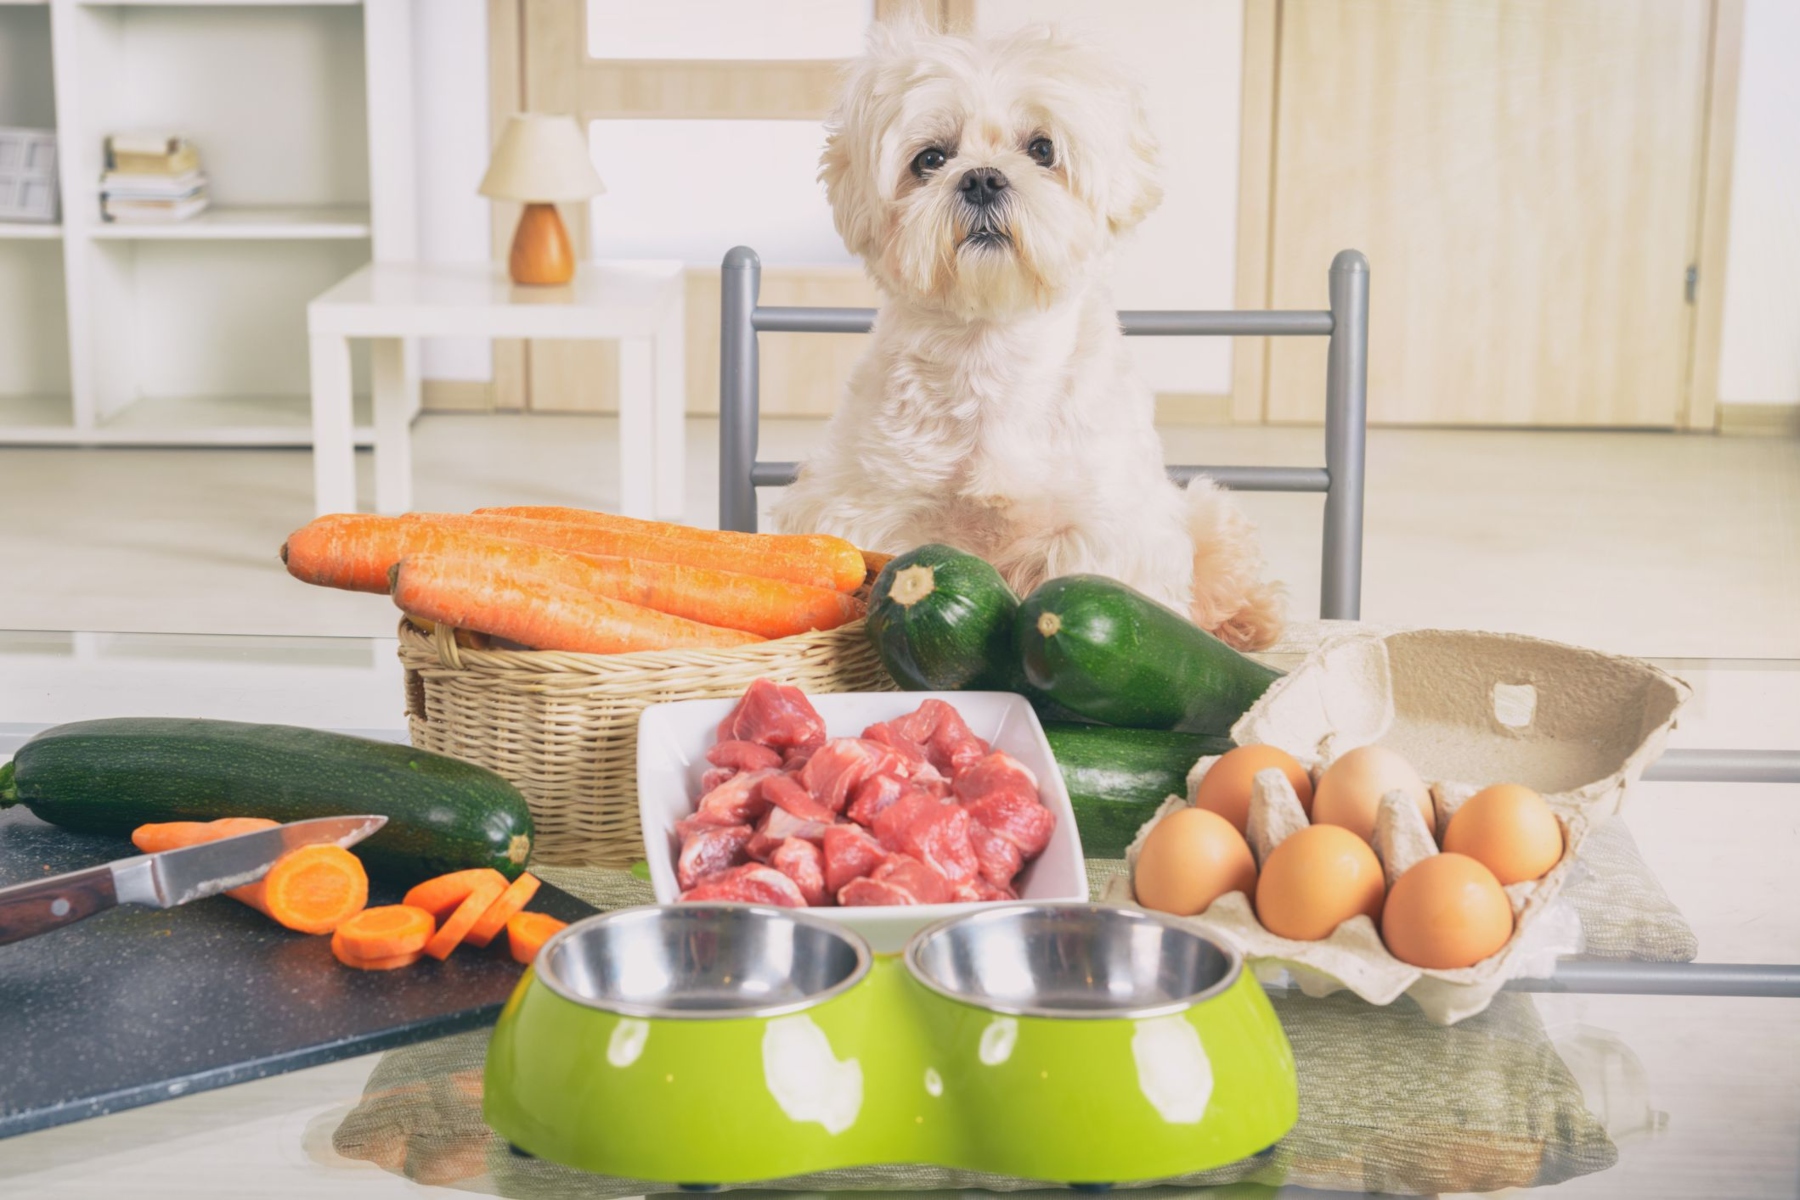 Διατροφή κατοικίδια: Σπιτικό φαγητό για το αγαπημένο σας κατοικίδιο, τον σκύλο